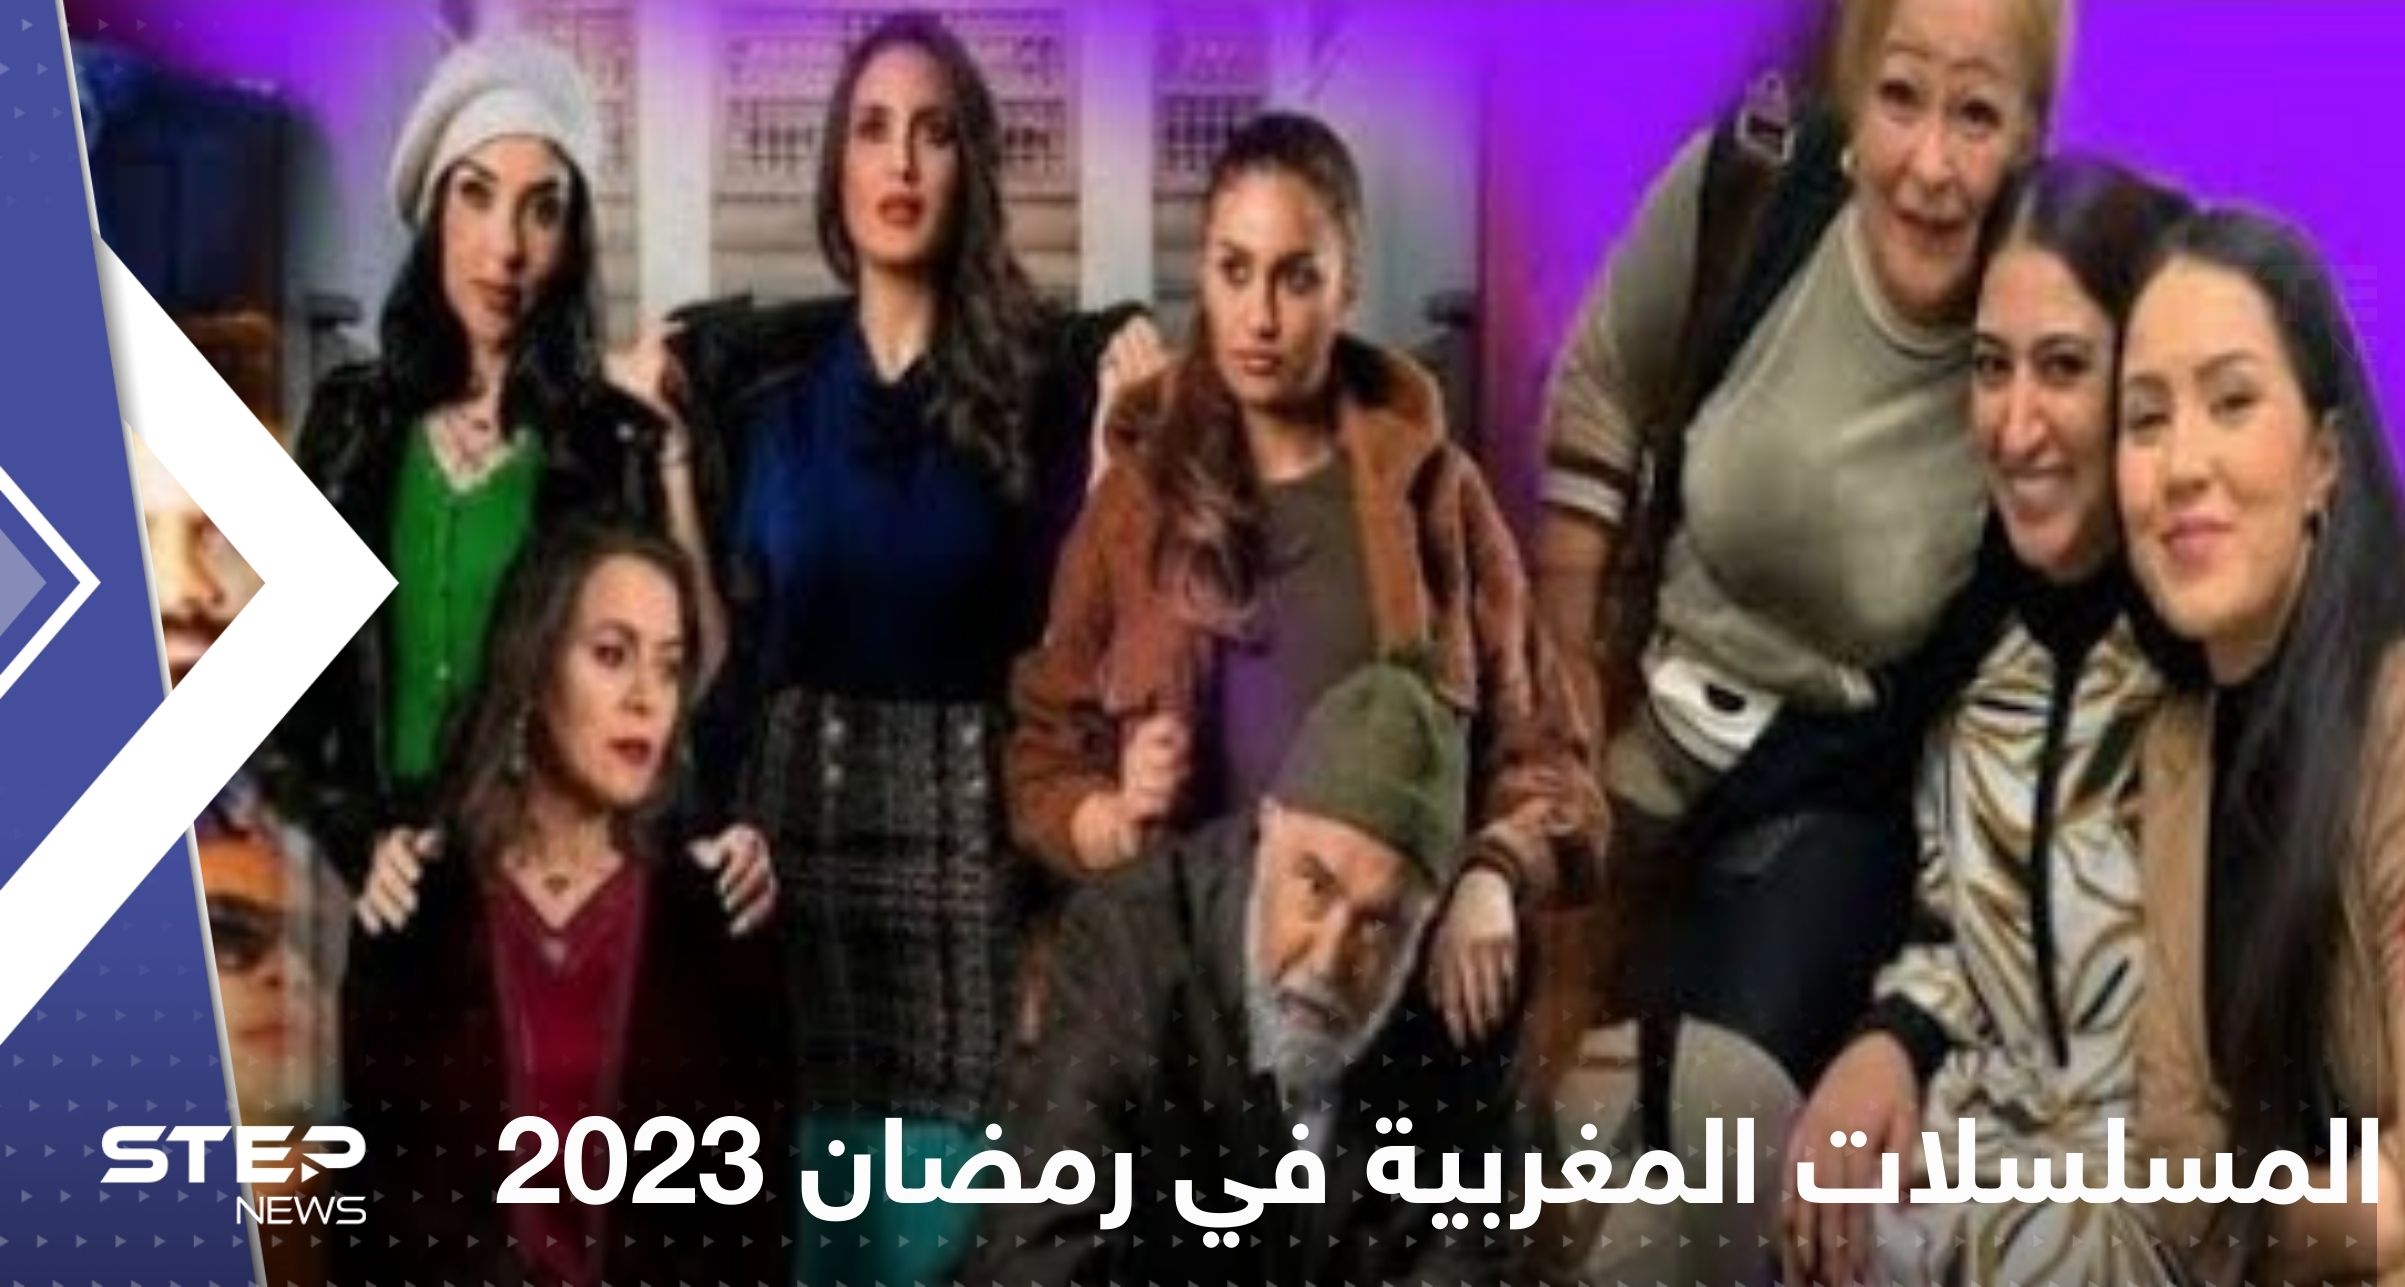 تعرف على أقوى المسلسلات المغربية في رمضان 2023